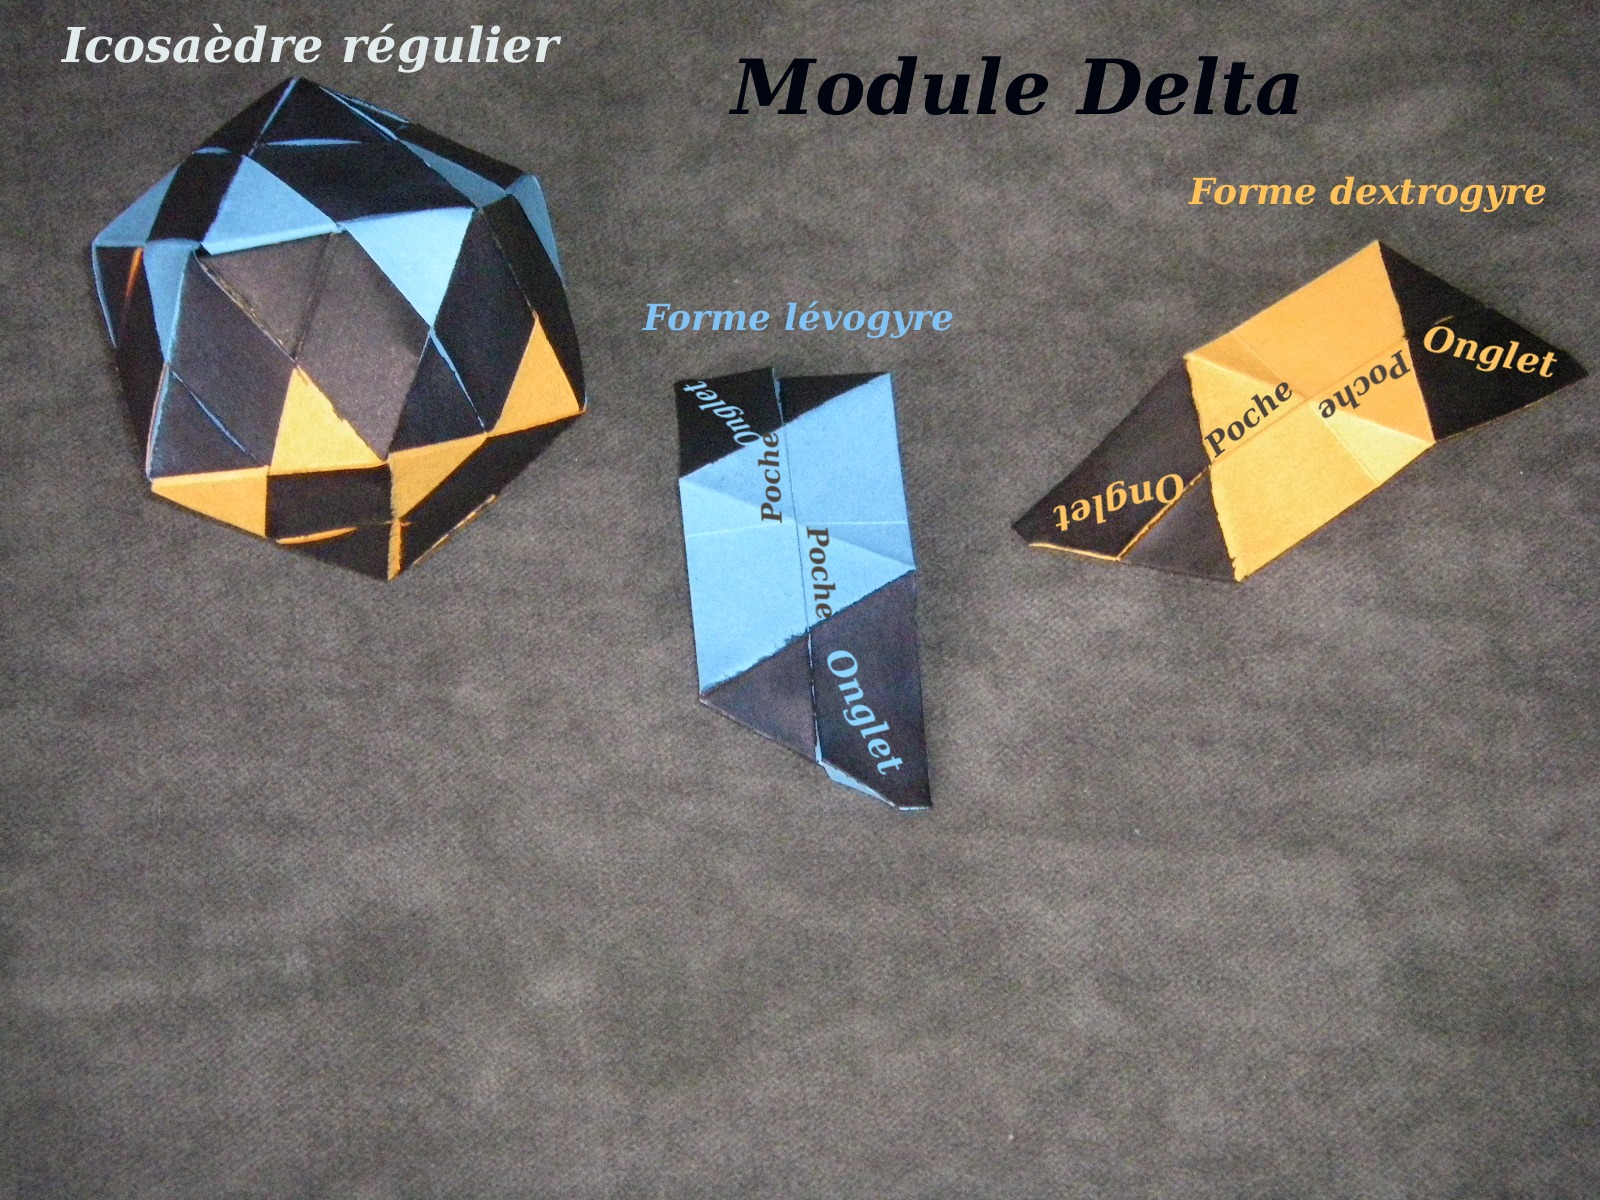 Le module "Delta"